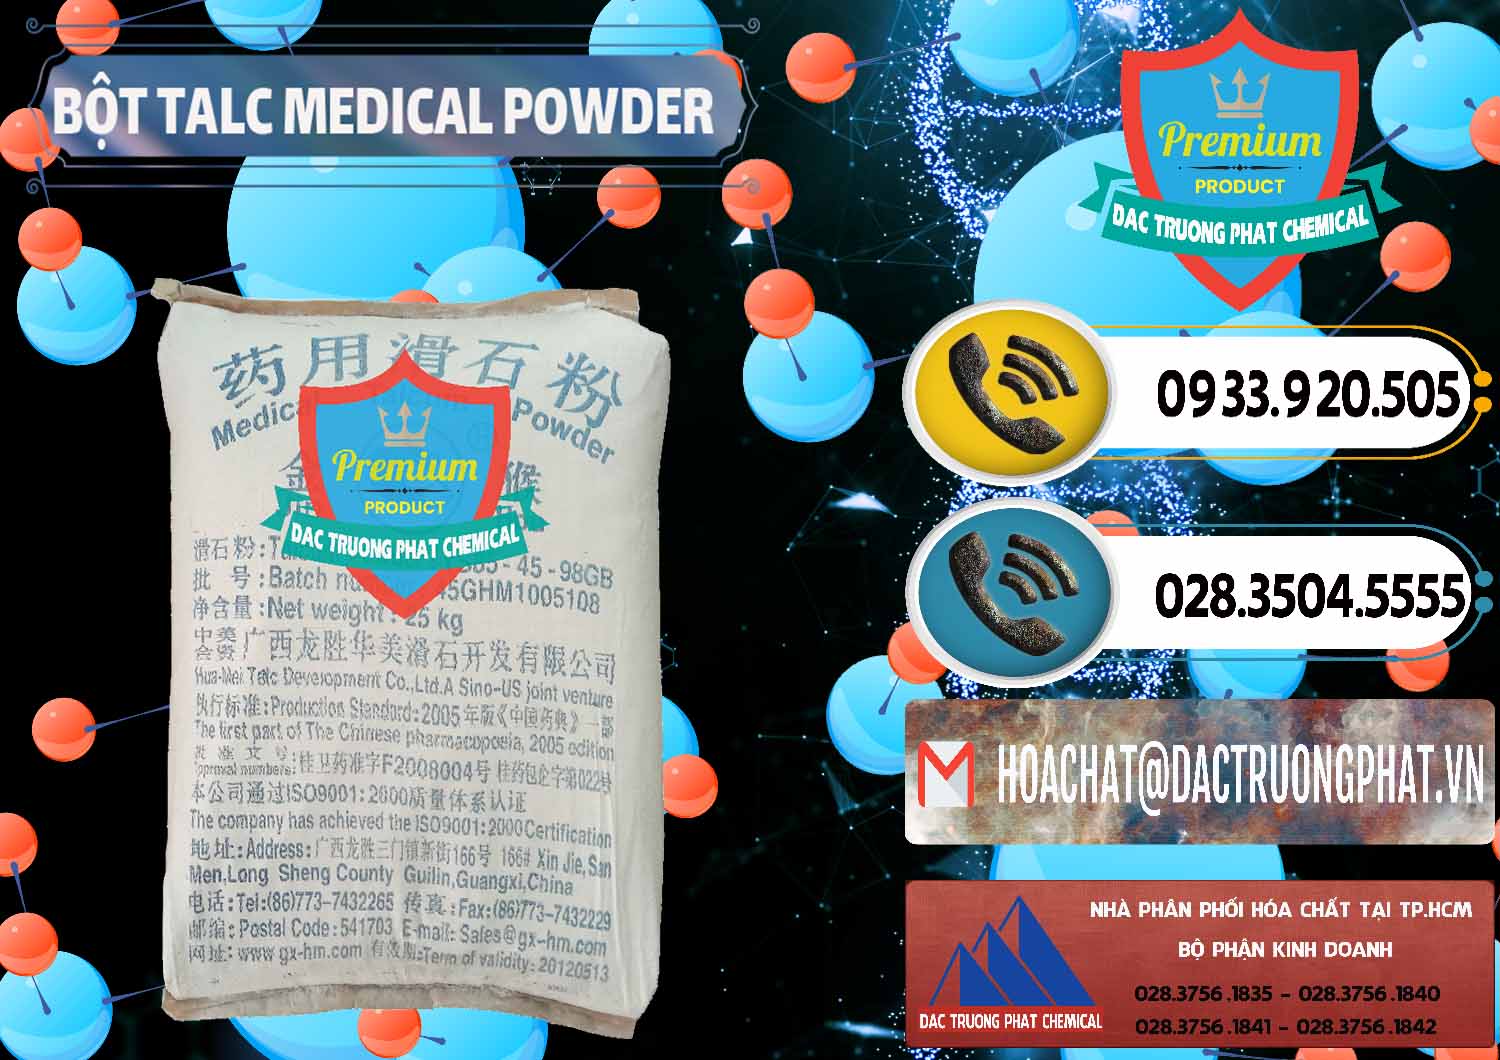 Chuyên bán ( cung ứng ) Bột Talc Medical Powder Trung Quốc China - 0036 - Chuyên cung cấp ( phân phối ) hóa chất tại TP.HCM - hoachatdetnhuom.vn